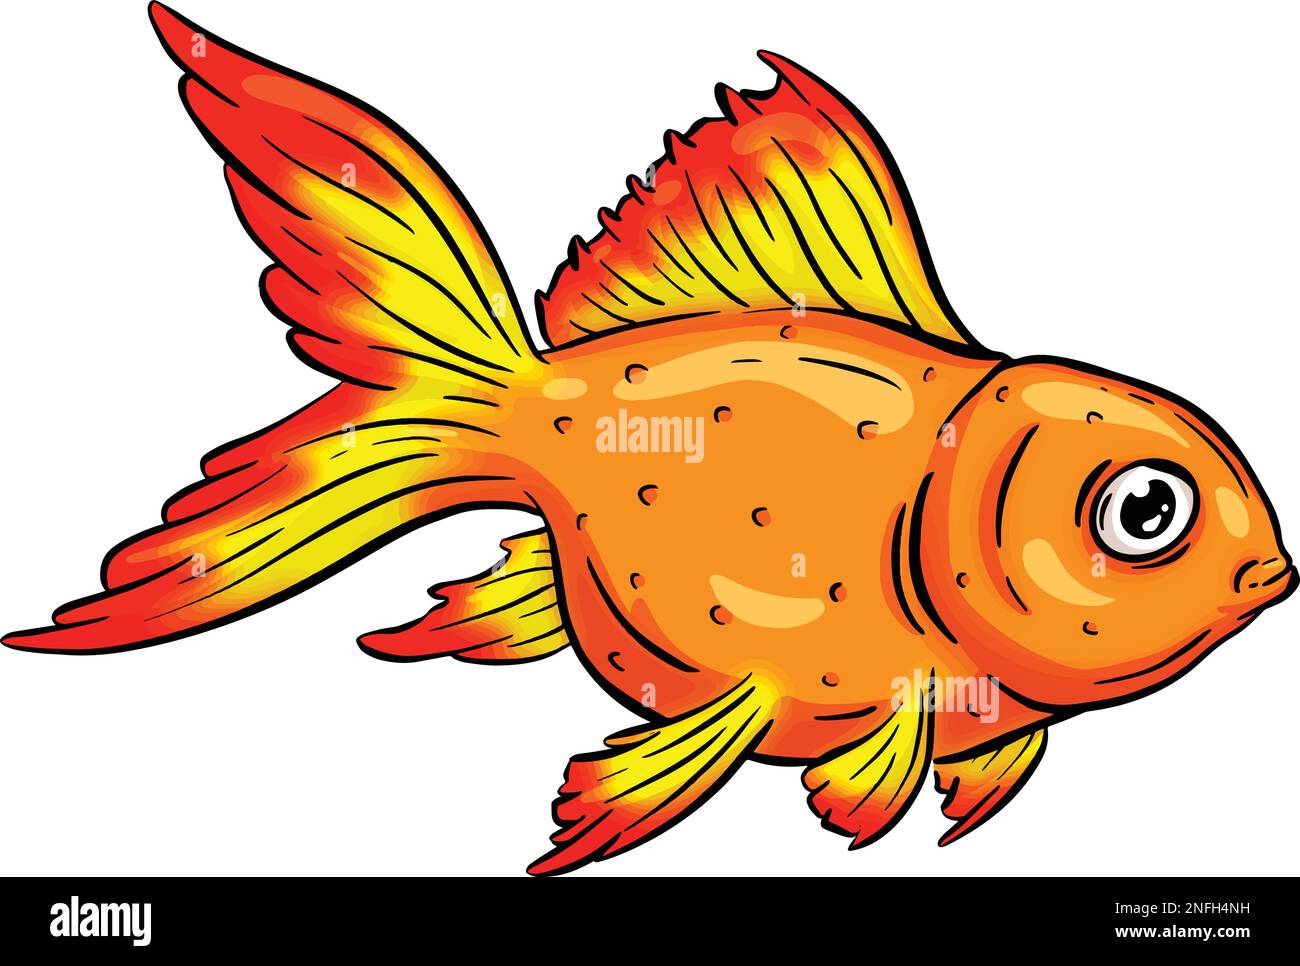 Ilustración de dibujos animados de peces marinos submarinos en un vector  Imagen Vector de stock - Alamy